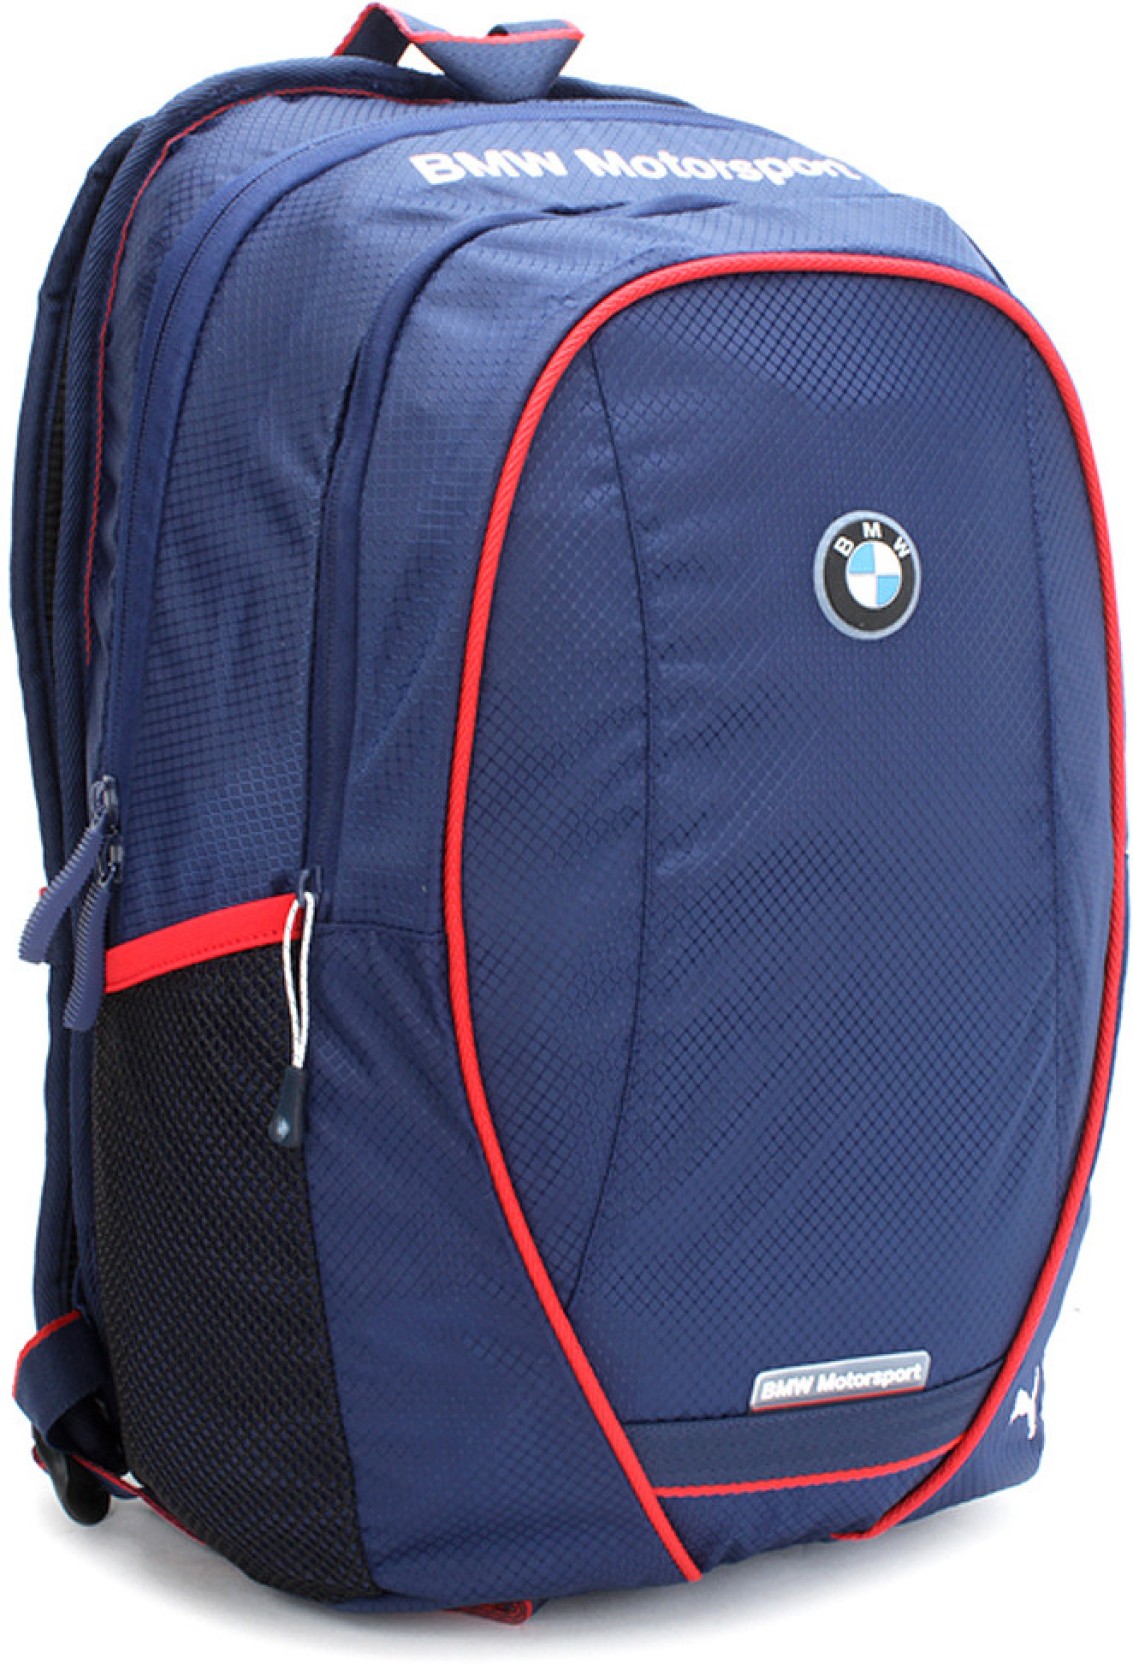 Puma BMW Motorsport Backpack Medieval Blue - Price in India | Flipkart.com